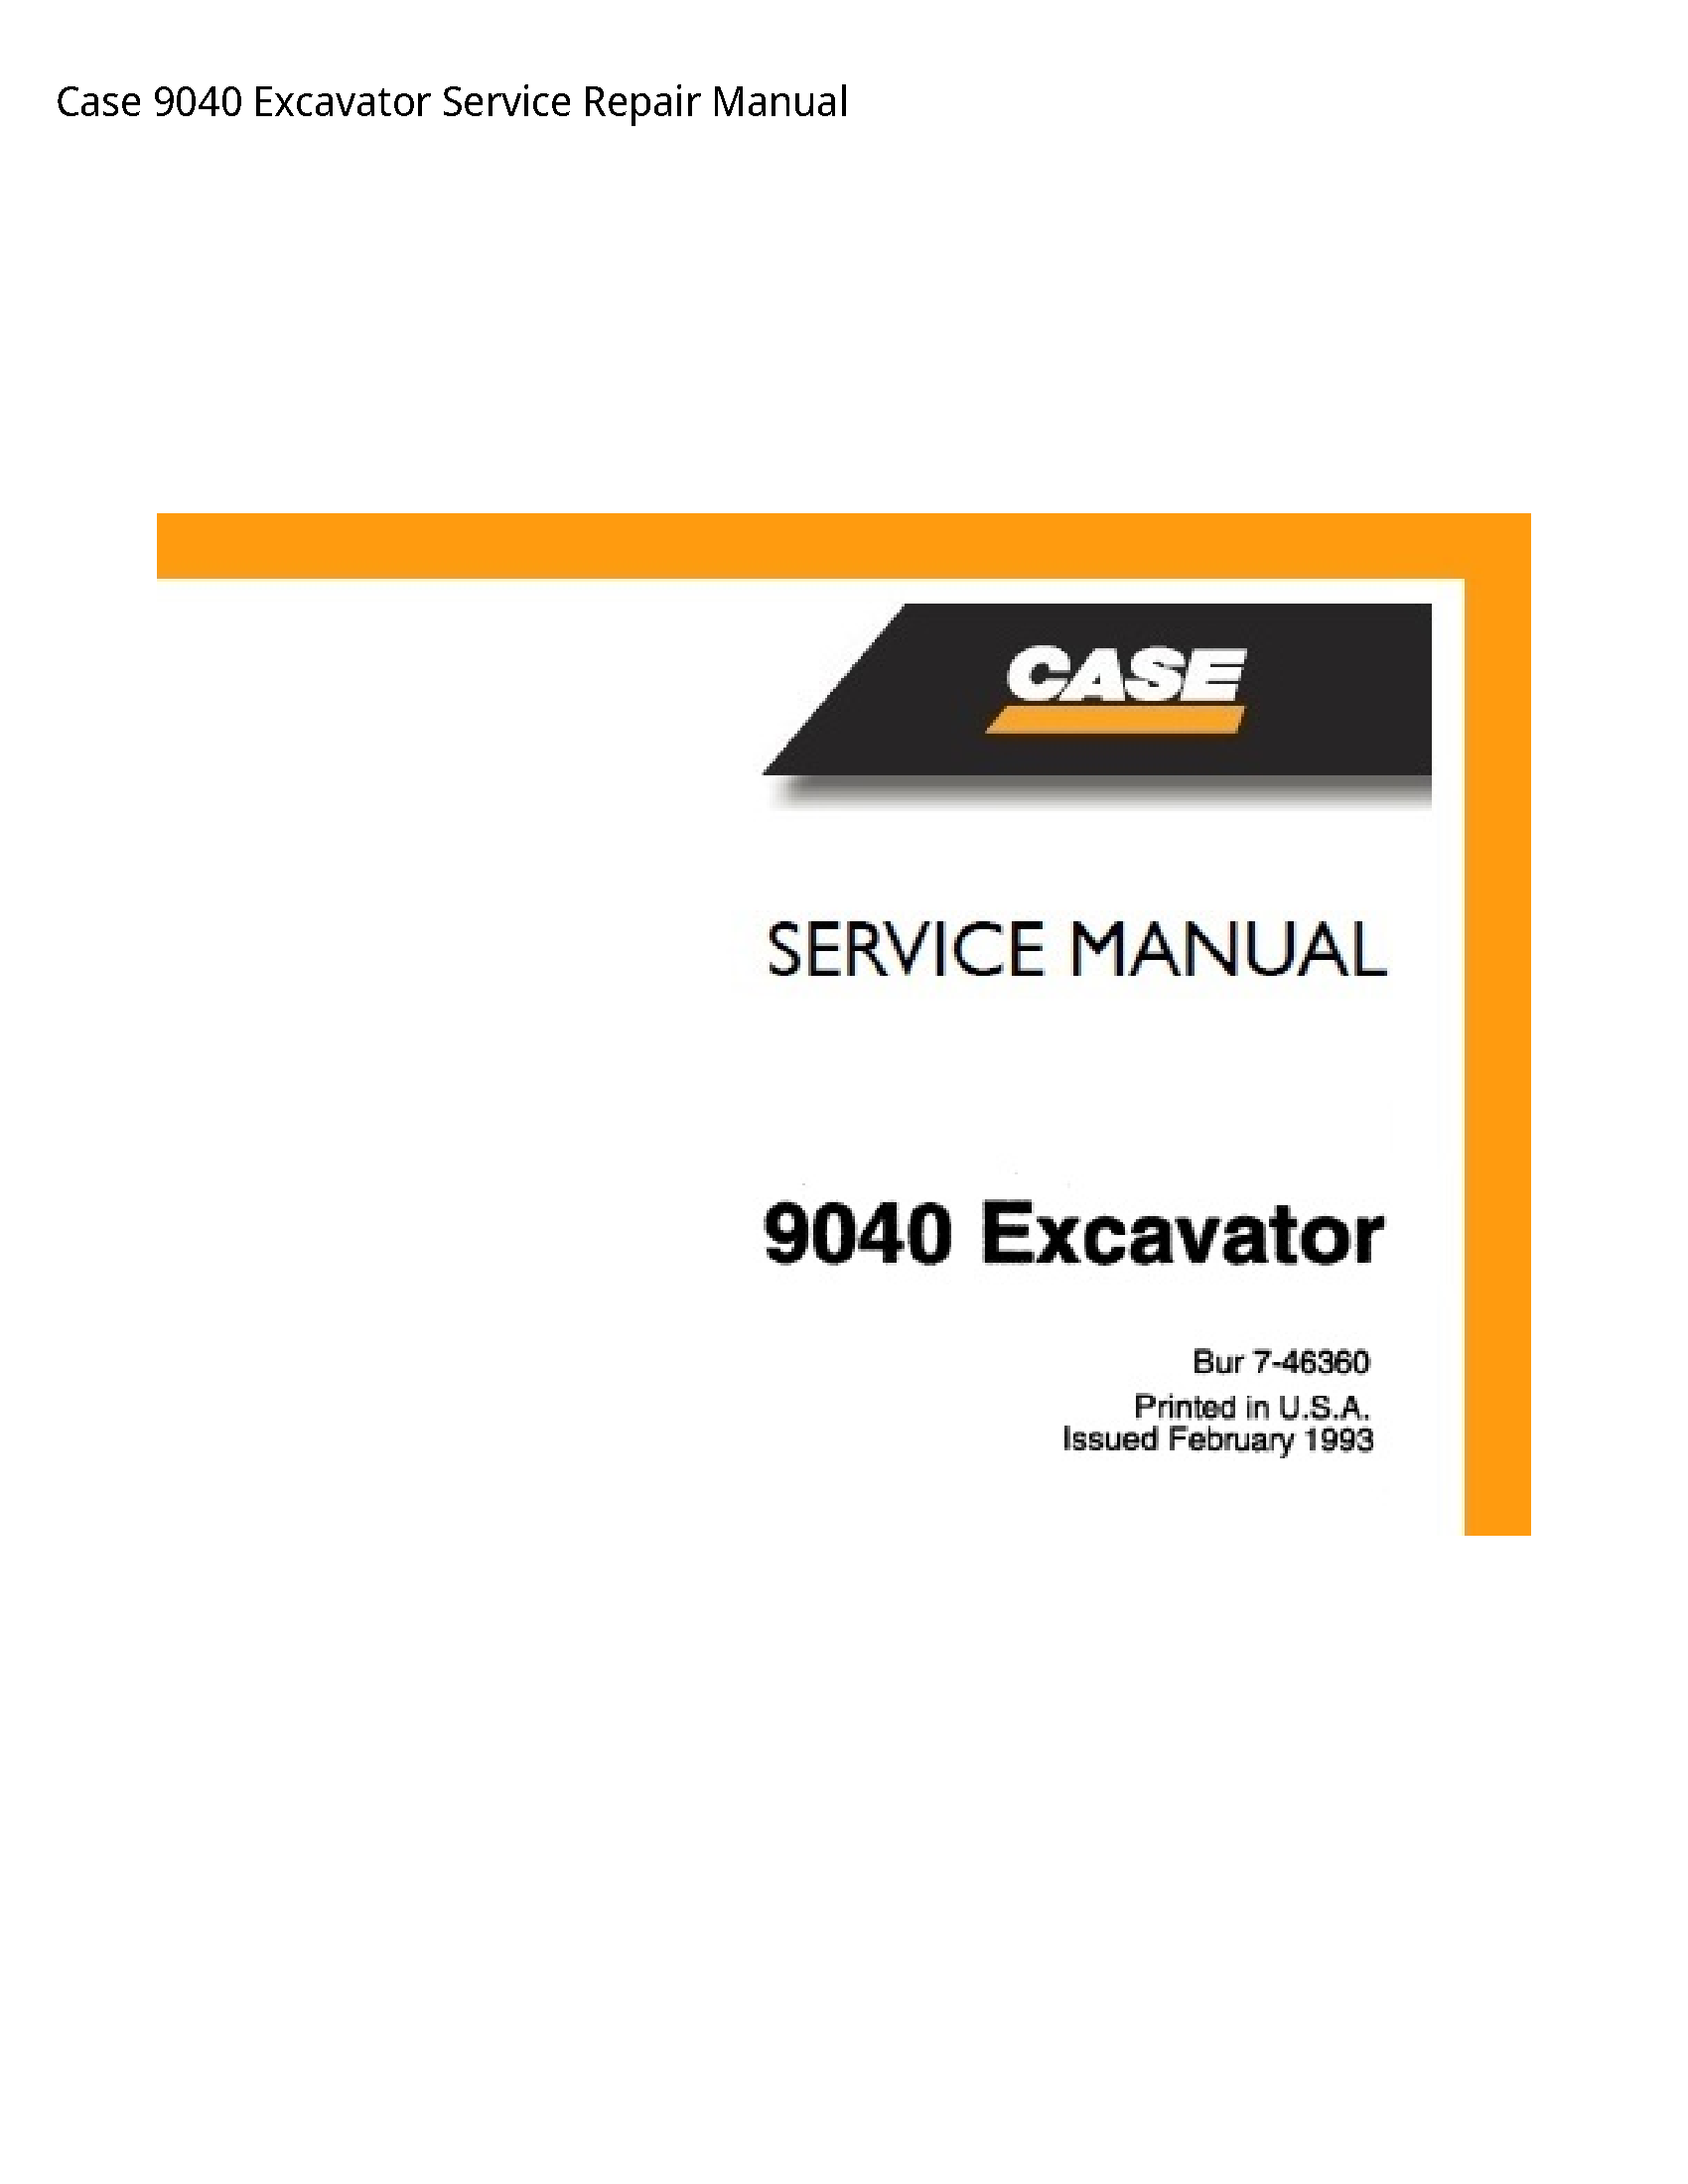 Case/Case IH 9040 Excavator manual